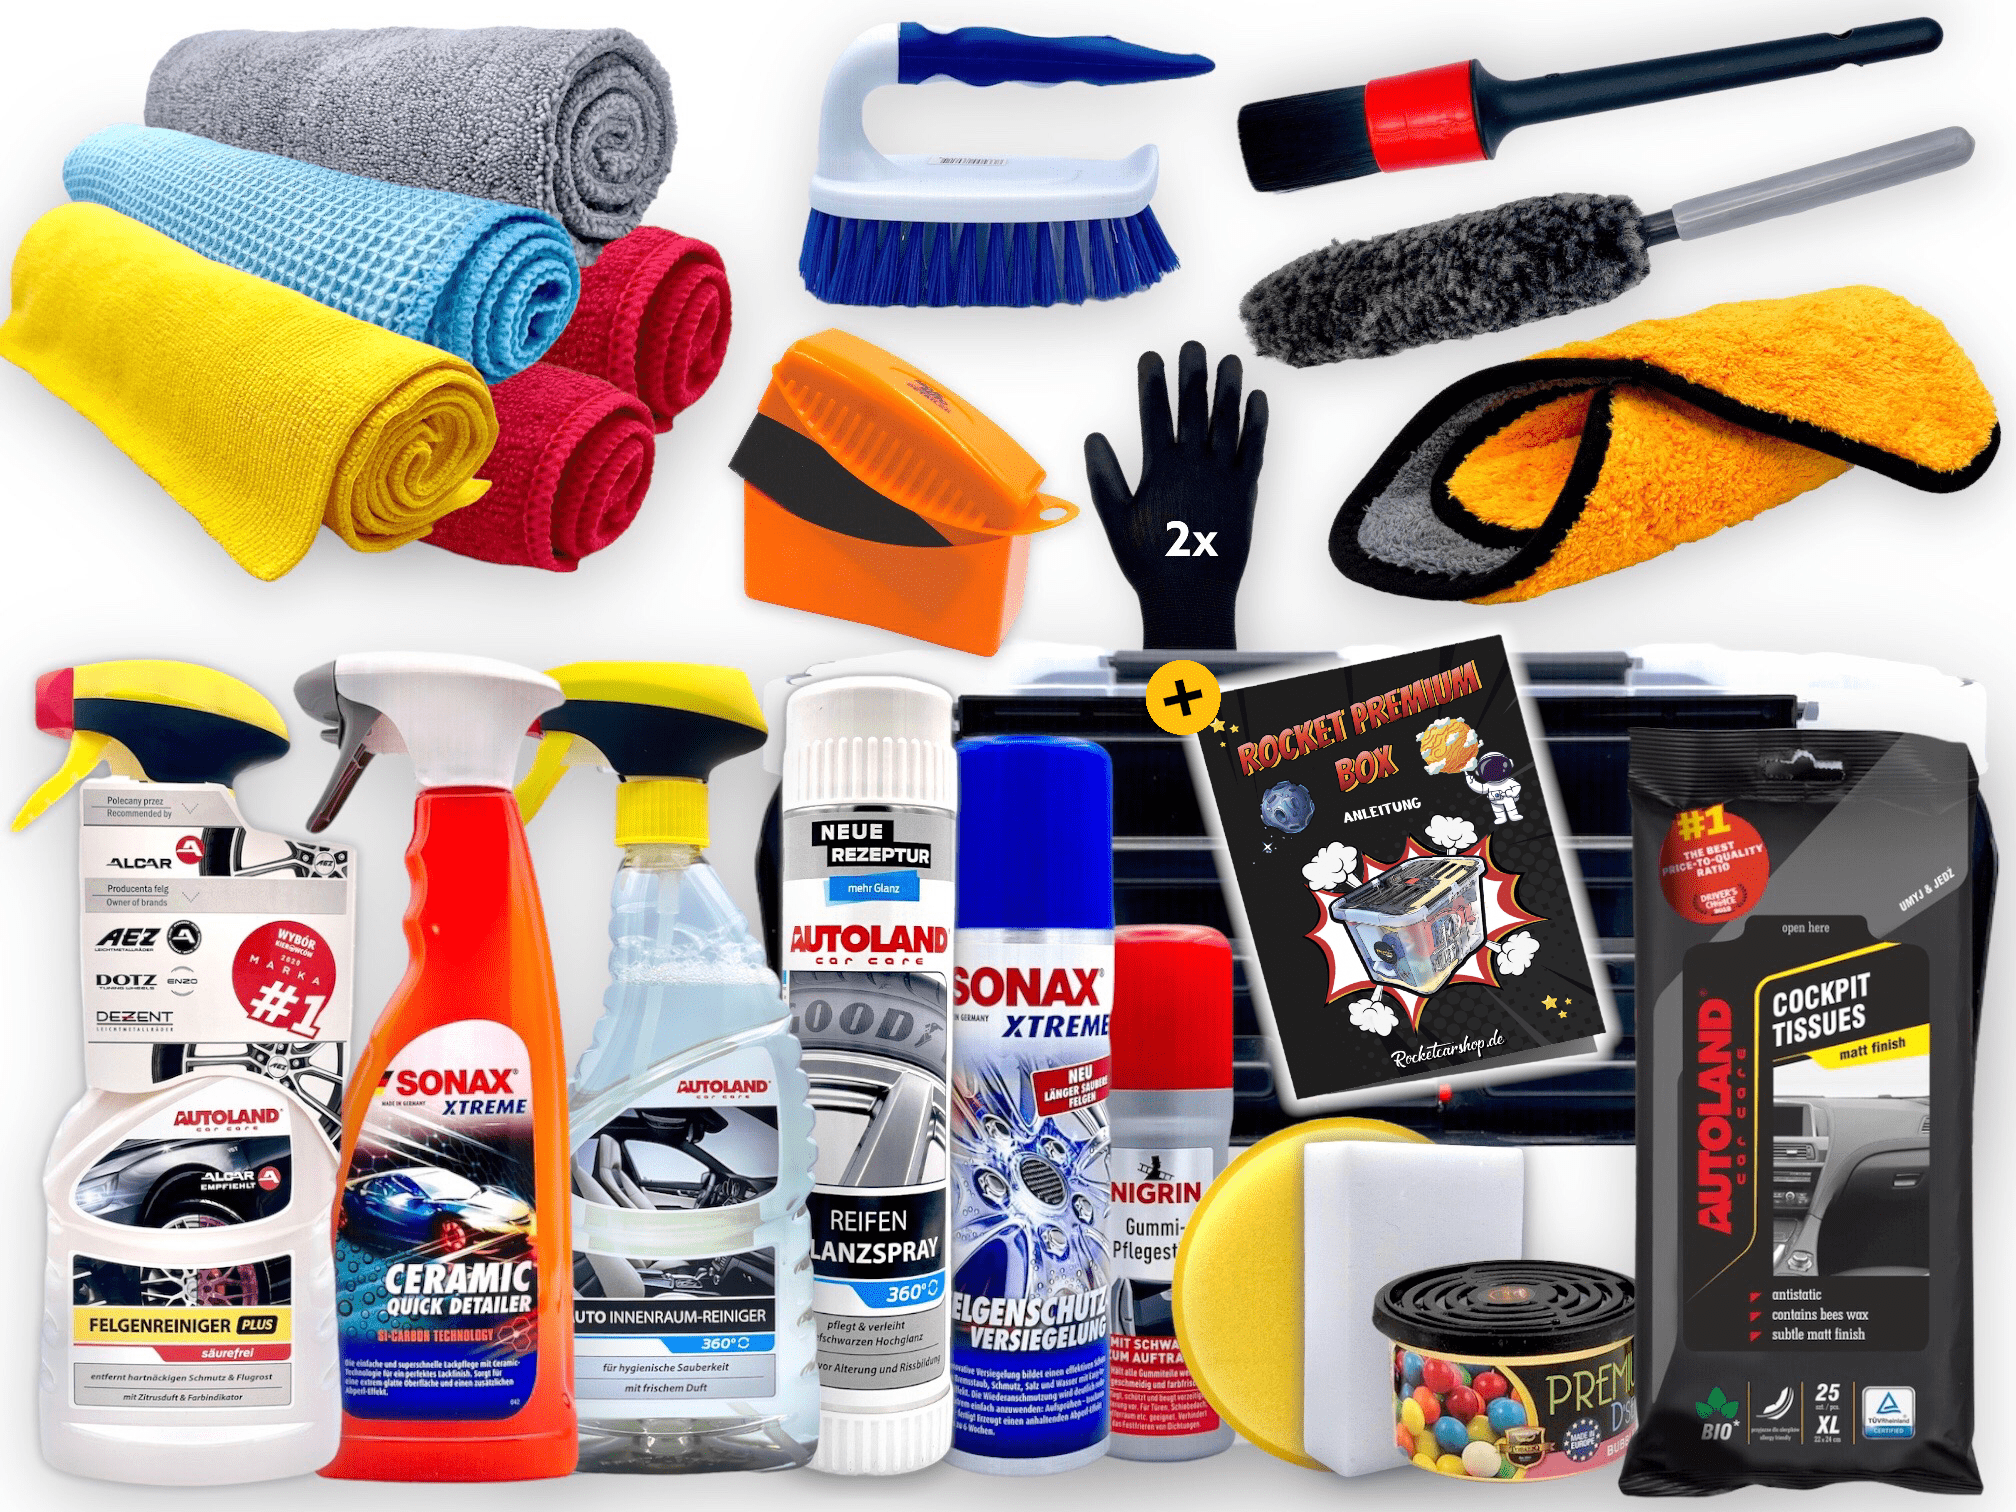 Kit nettoyage voiture : pack et kit de lavage pour auto